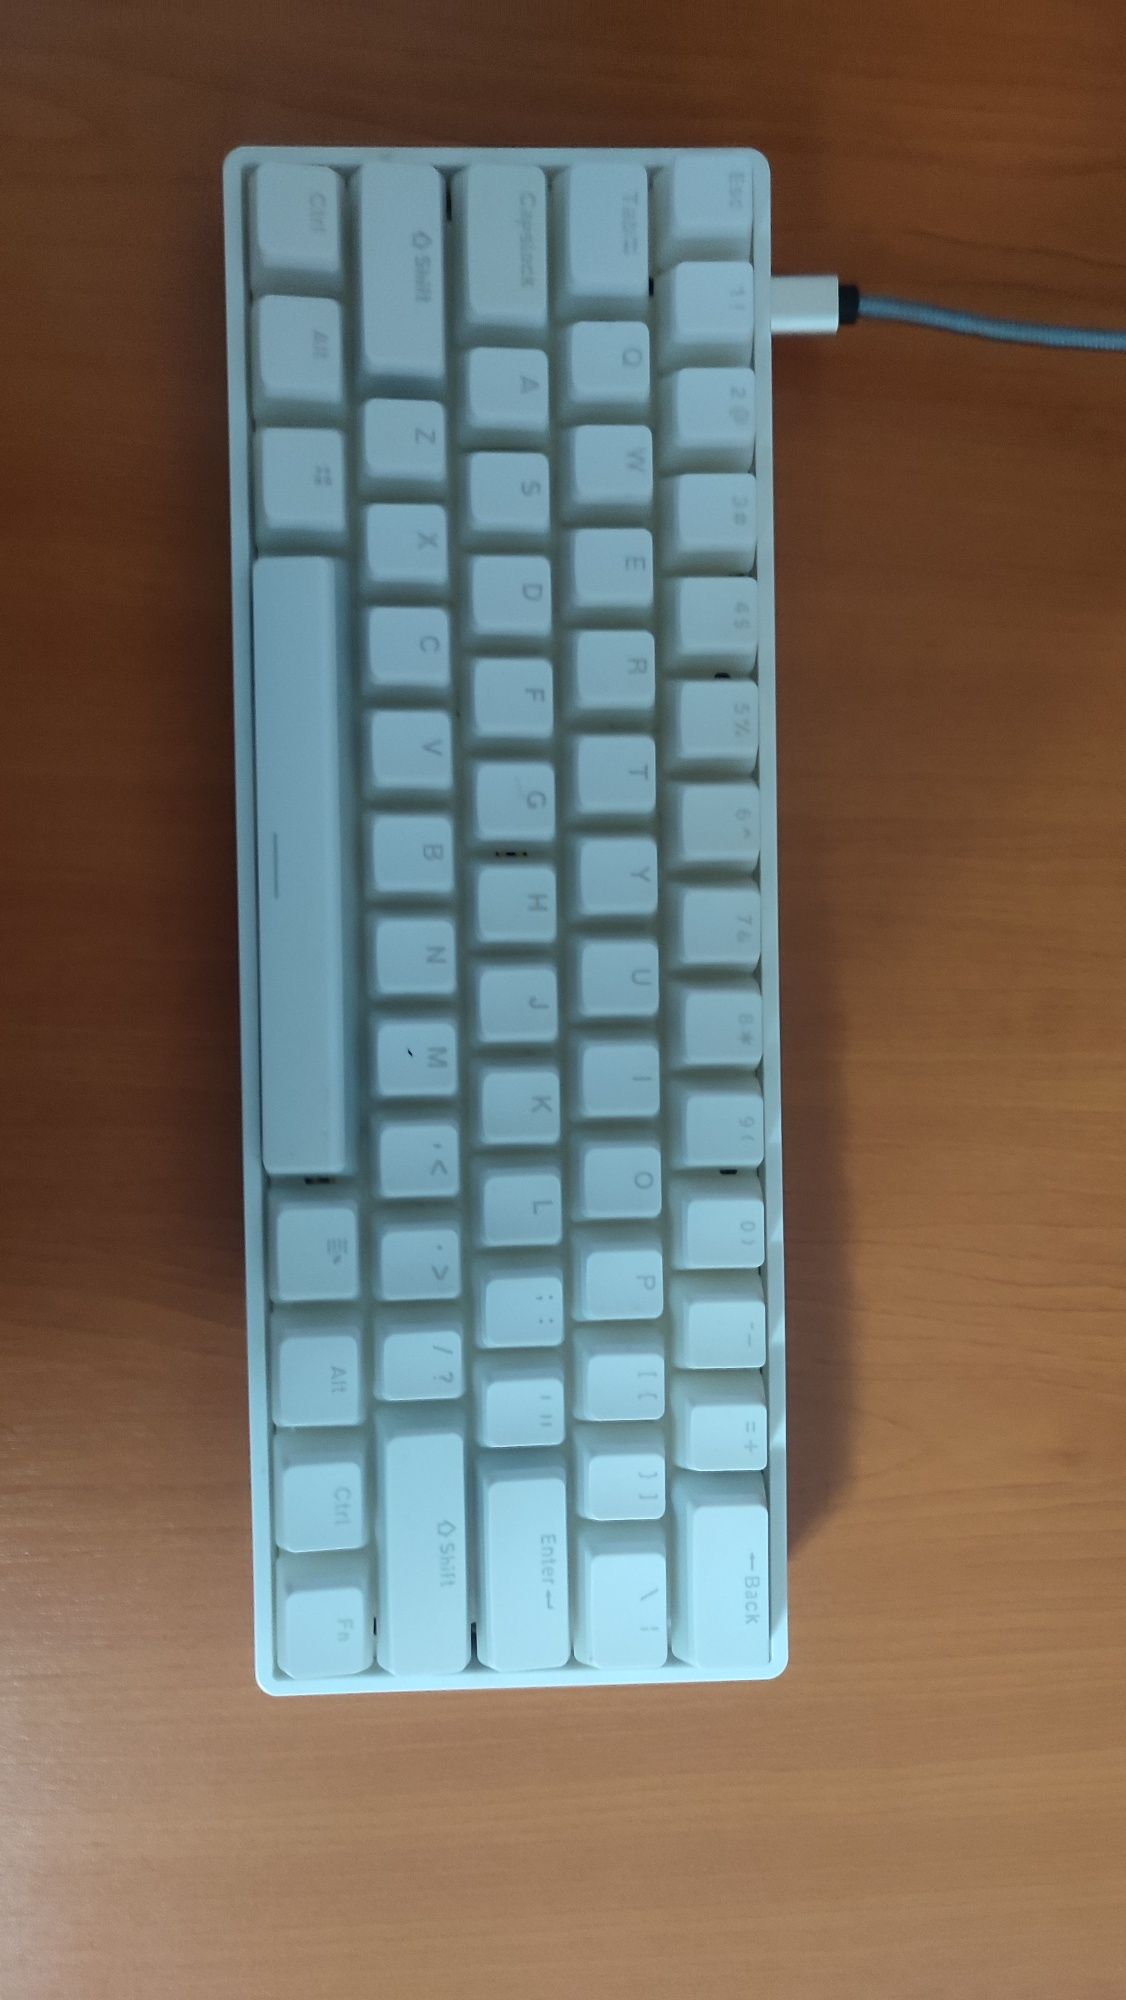 Tastatura 60% custom